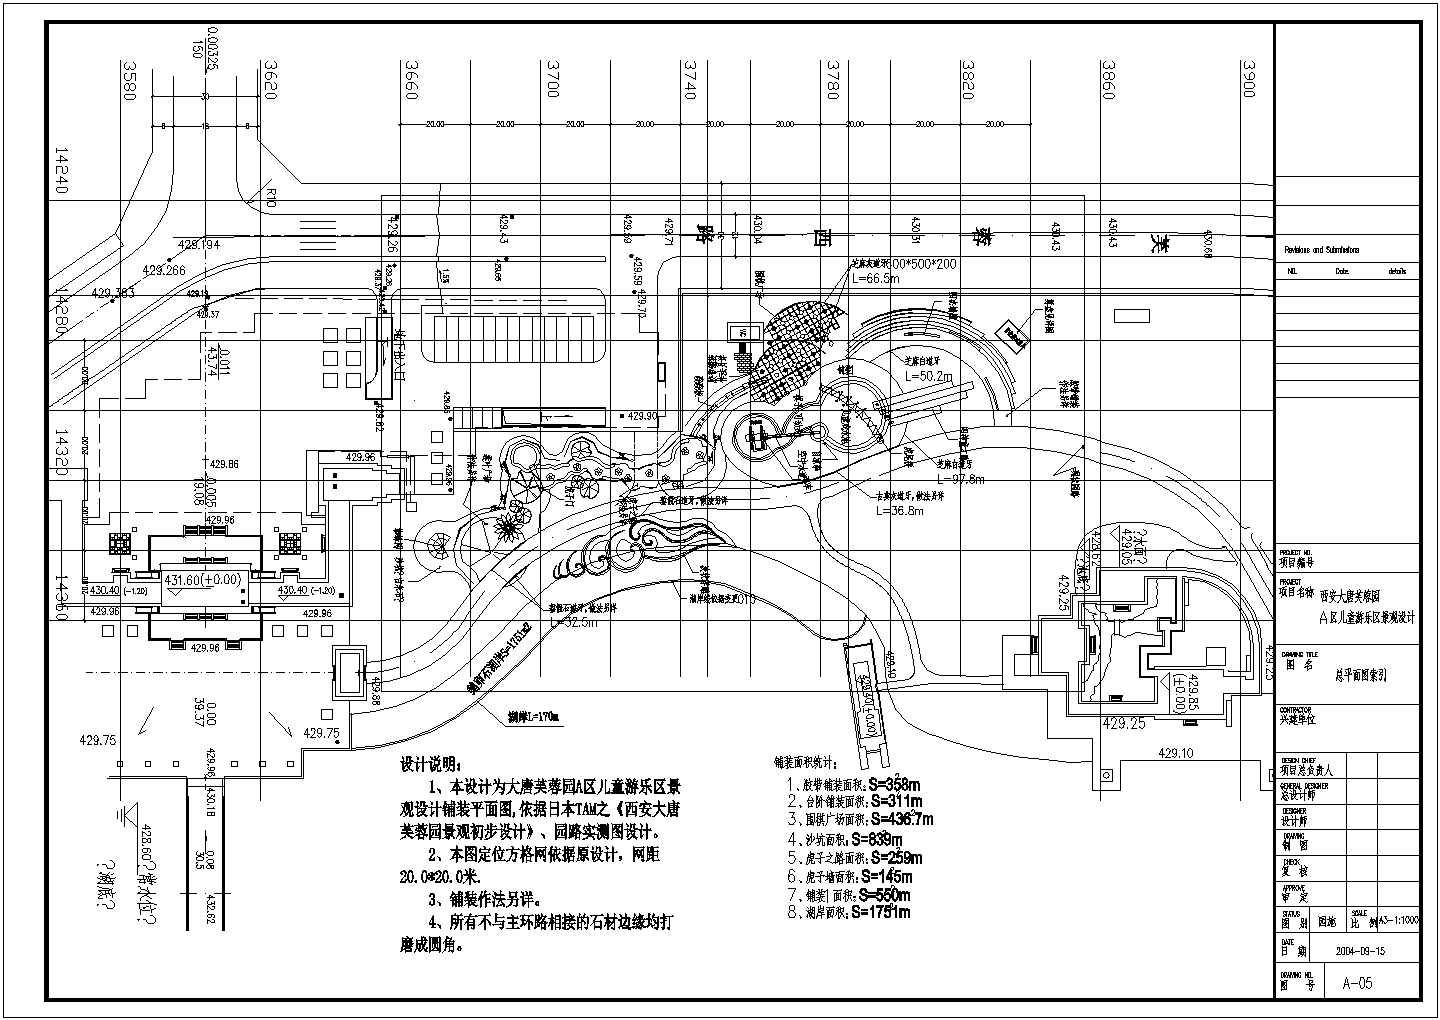 【西安】儿童游乐园园林景观工程竣工图